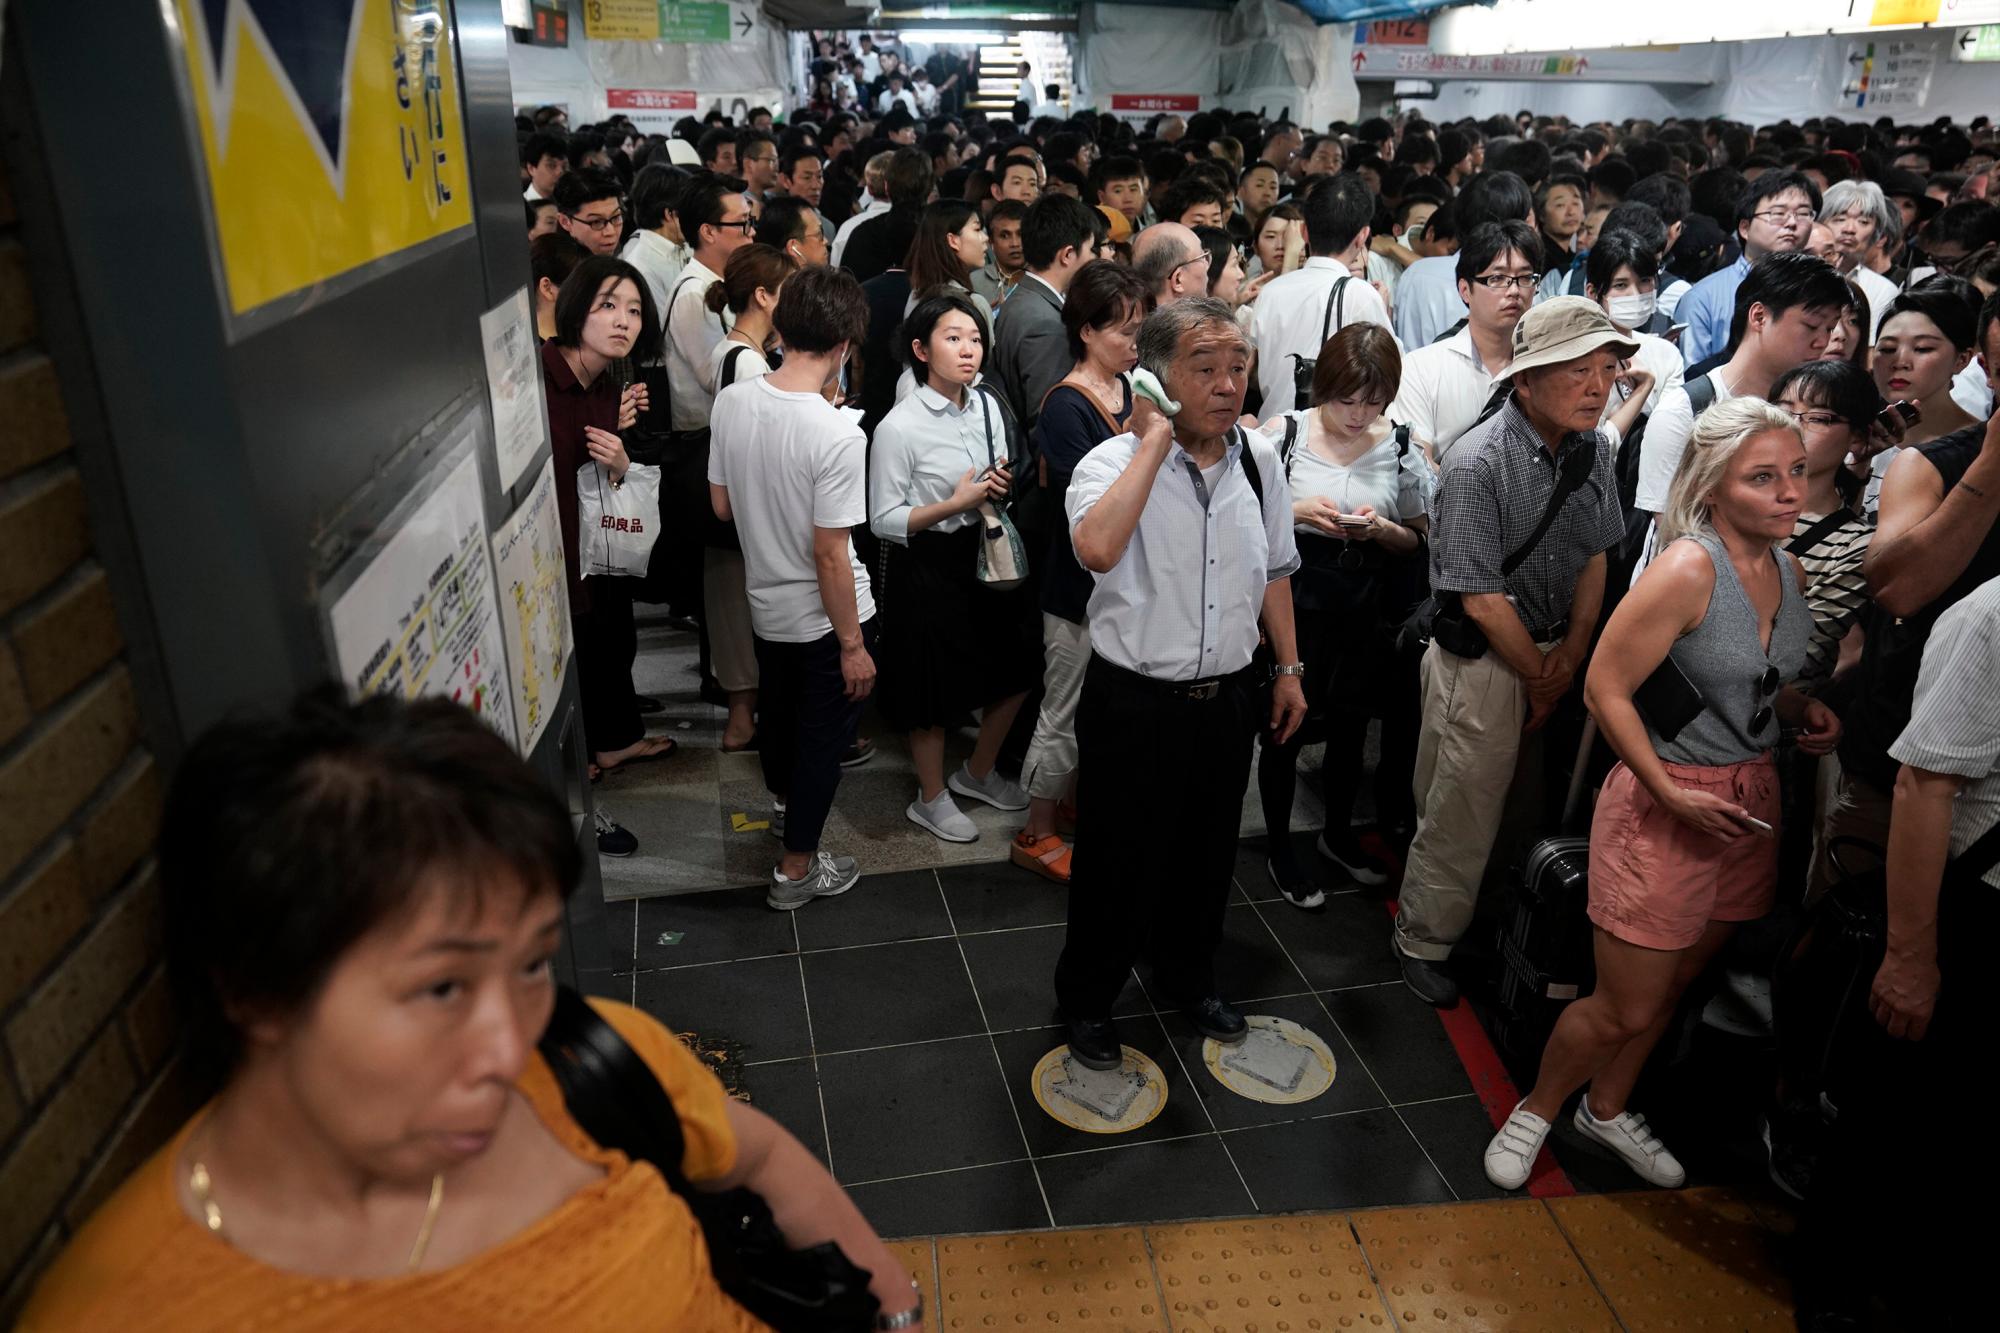 Los pasajeros se alinean en la estación Shinjuku, esperando que las plataformas de trenes abran el lunes 9 de septiembre de 2019 en Tokio. El tifón Faxai está soplando en el área metropolitana de Tokio, interrumpiendo los viajes, cortando el poder y causando docenas de lesiones.